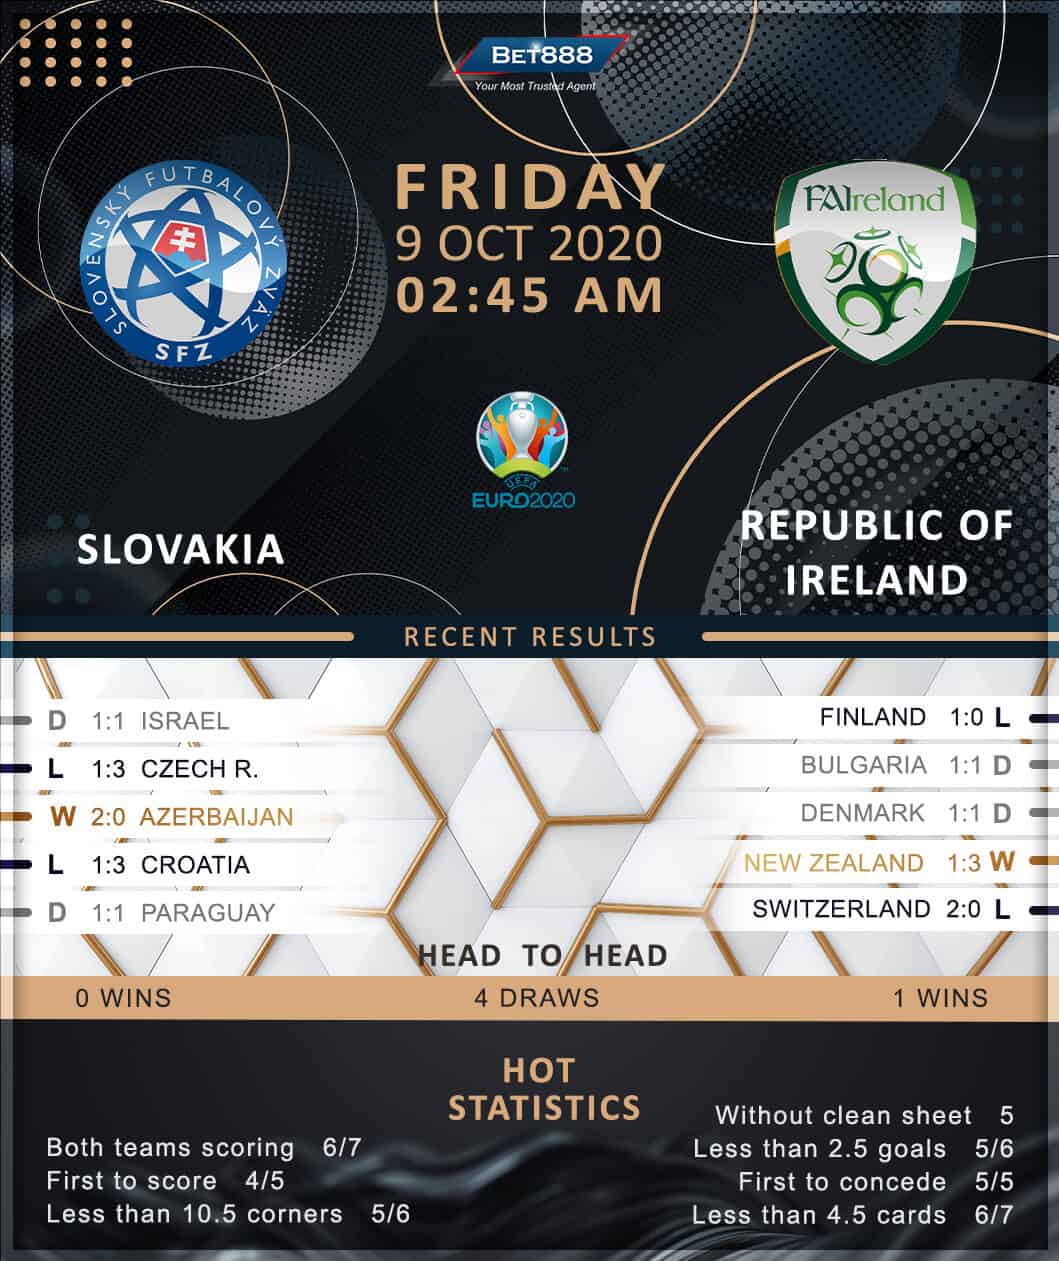 Slovakia vs Republic of Ireland 09/10/20